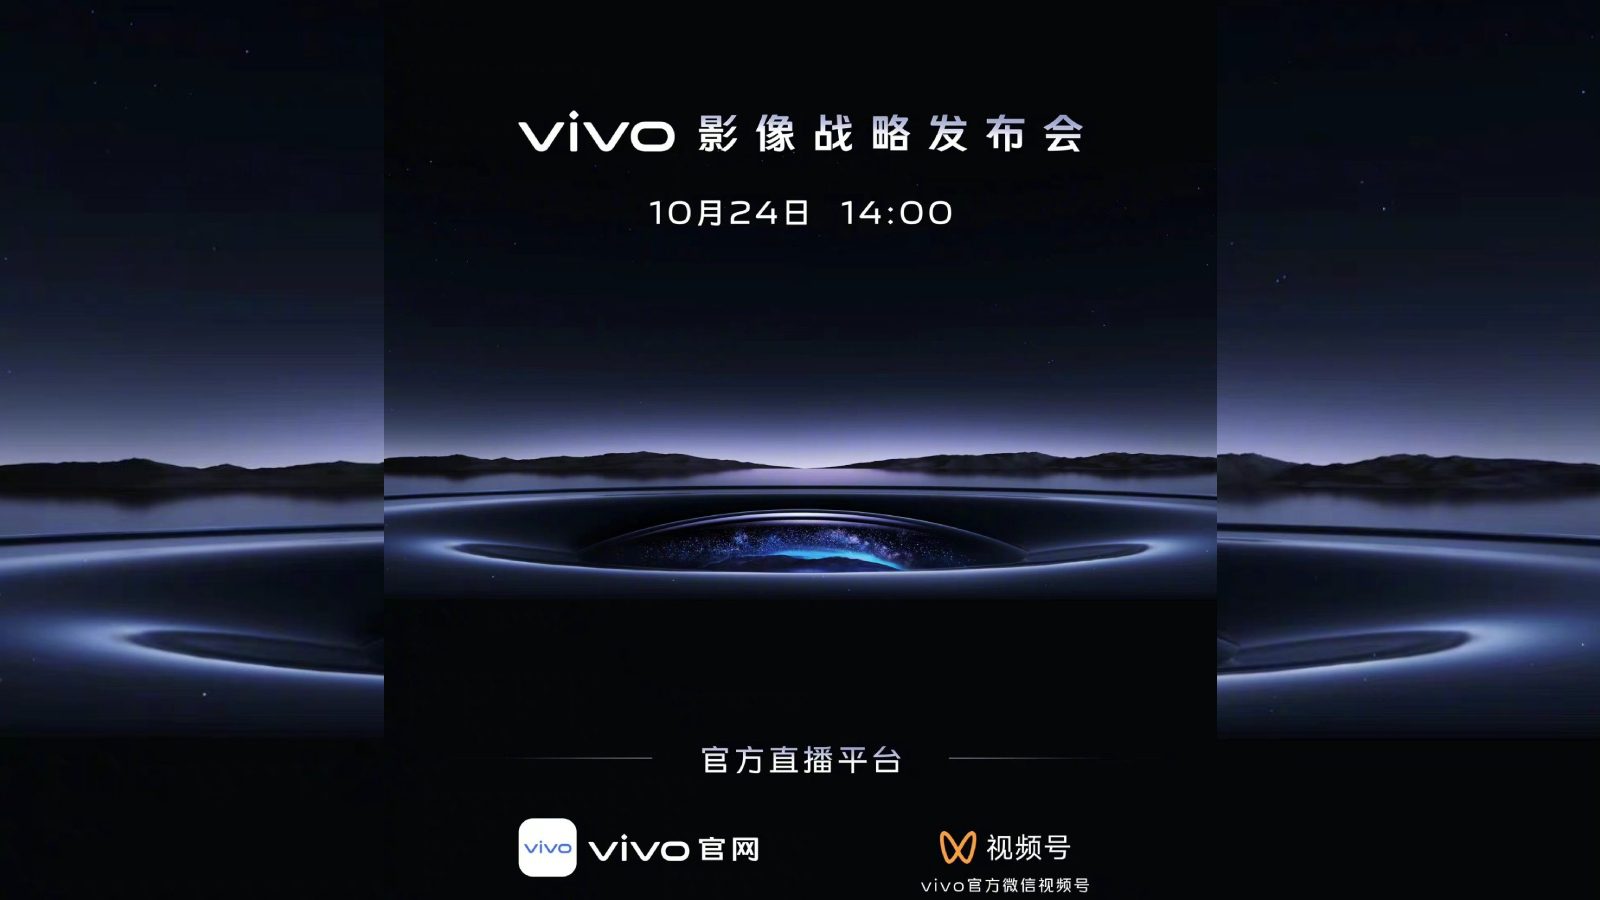 Vivo Конференция по стратегии визуализации запланирована на 24 октября.